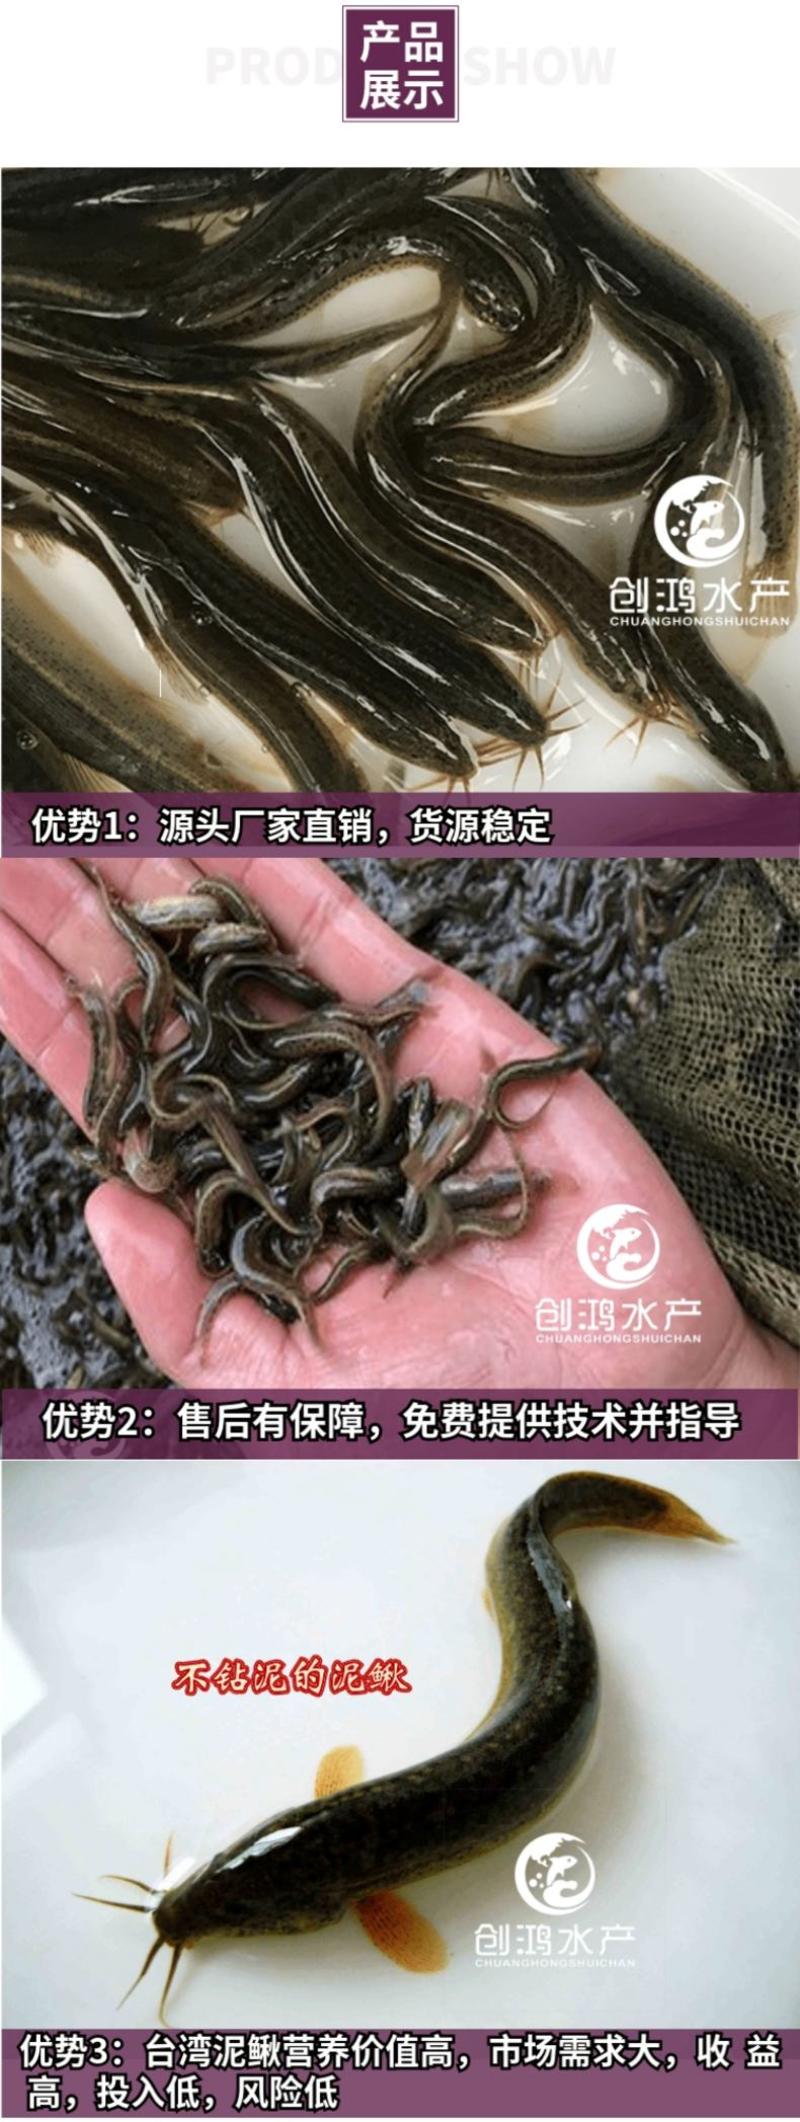 【特价批发】台湾泥鳅苗不钻泥的泥鳅鱼苗泥鳅水花供应